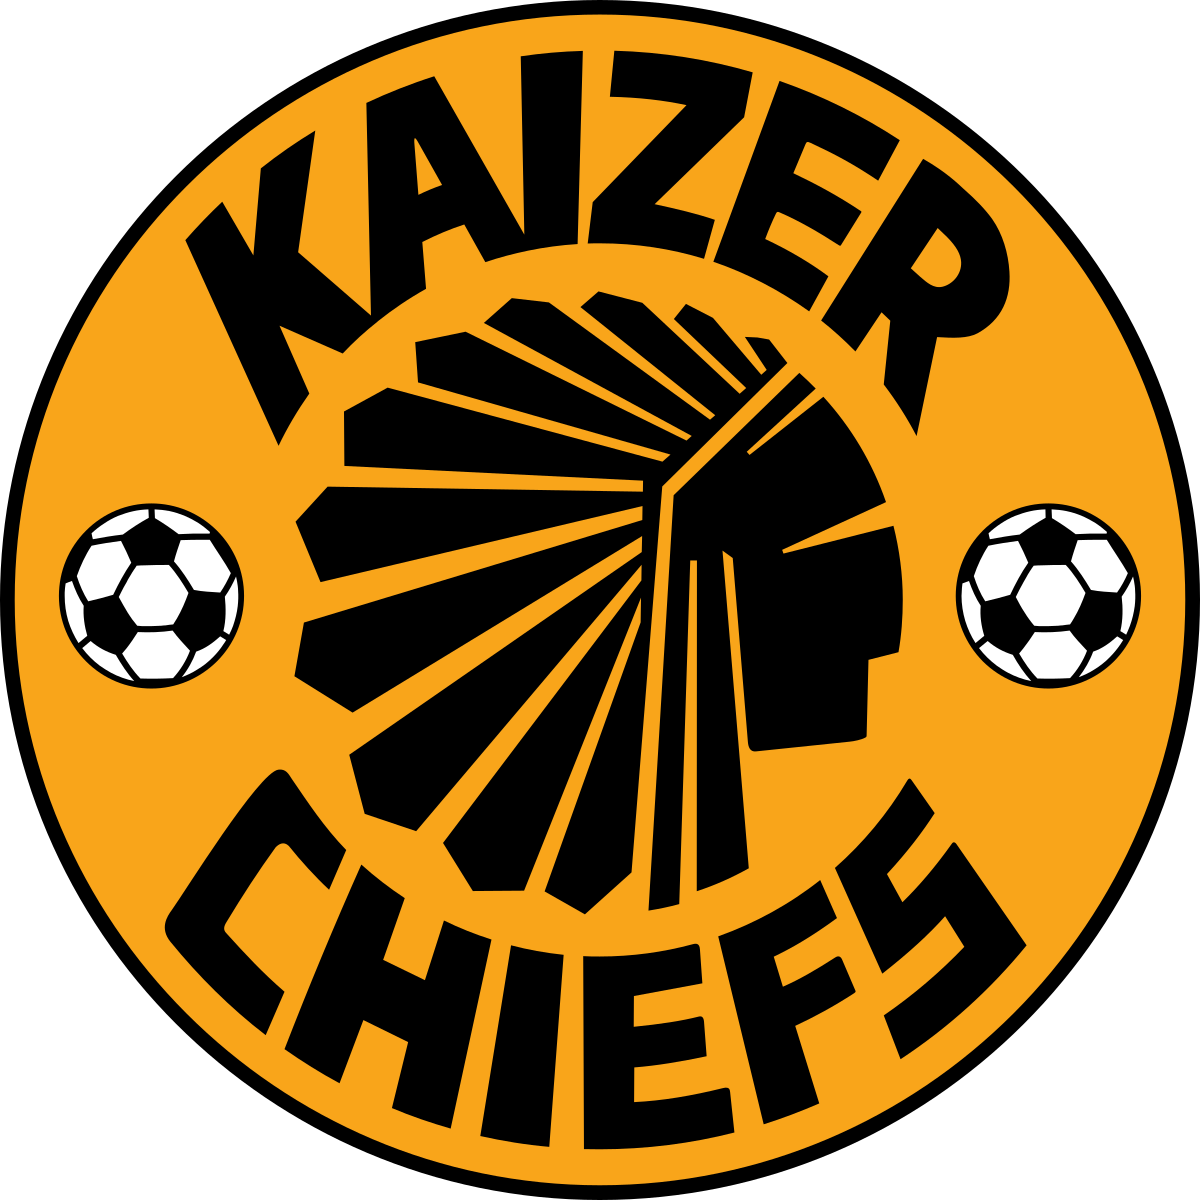 kaizer chiefs fc kit